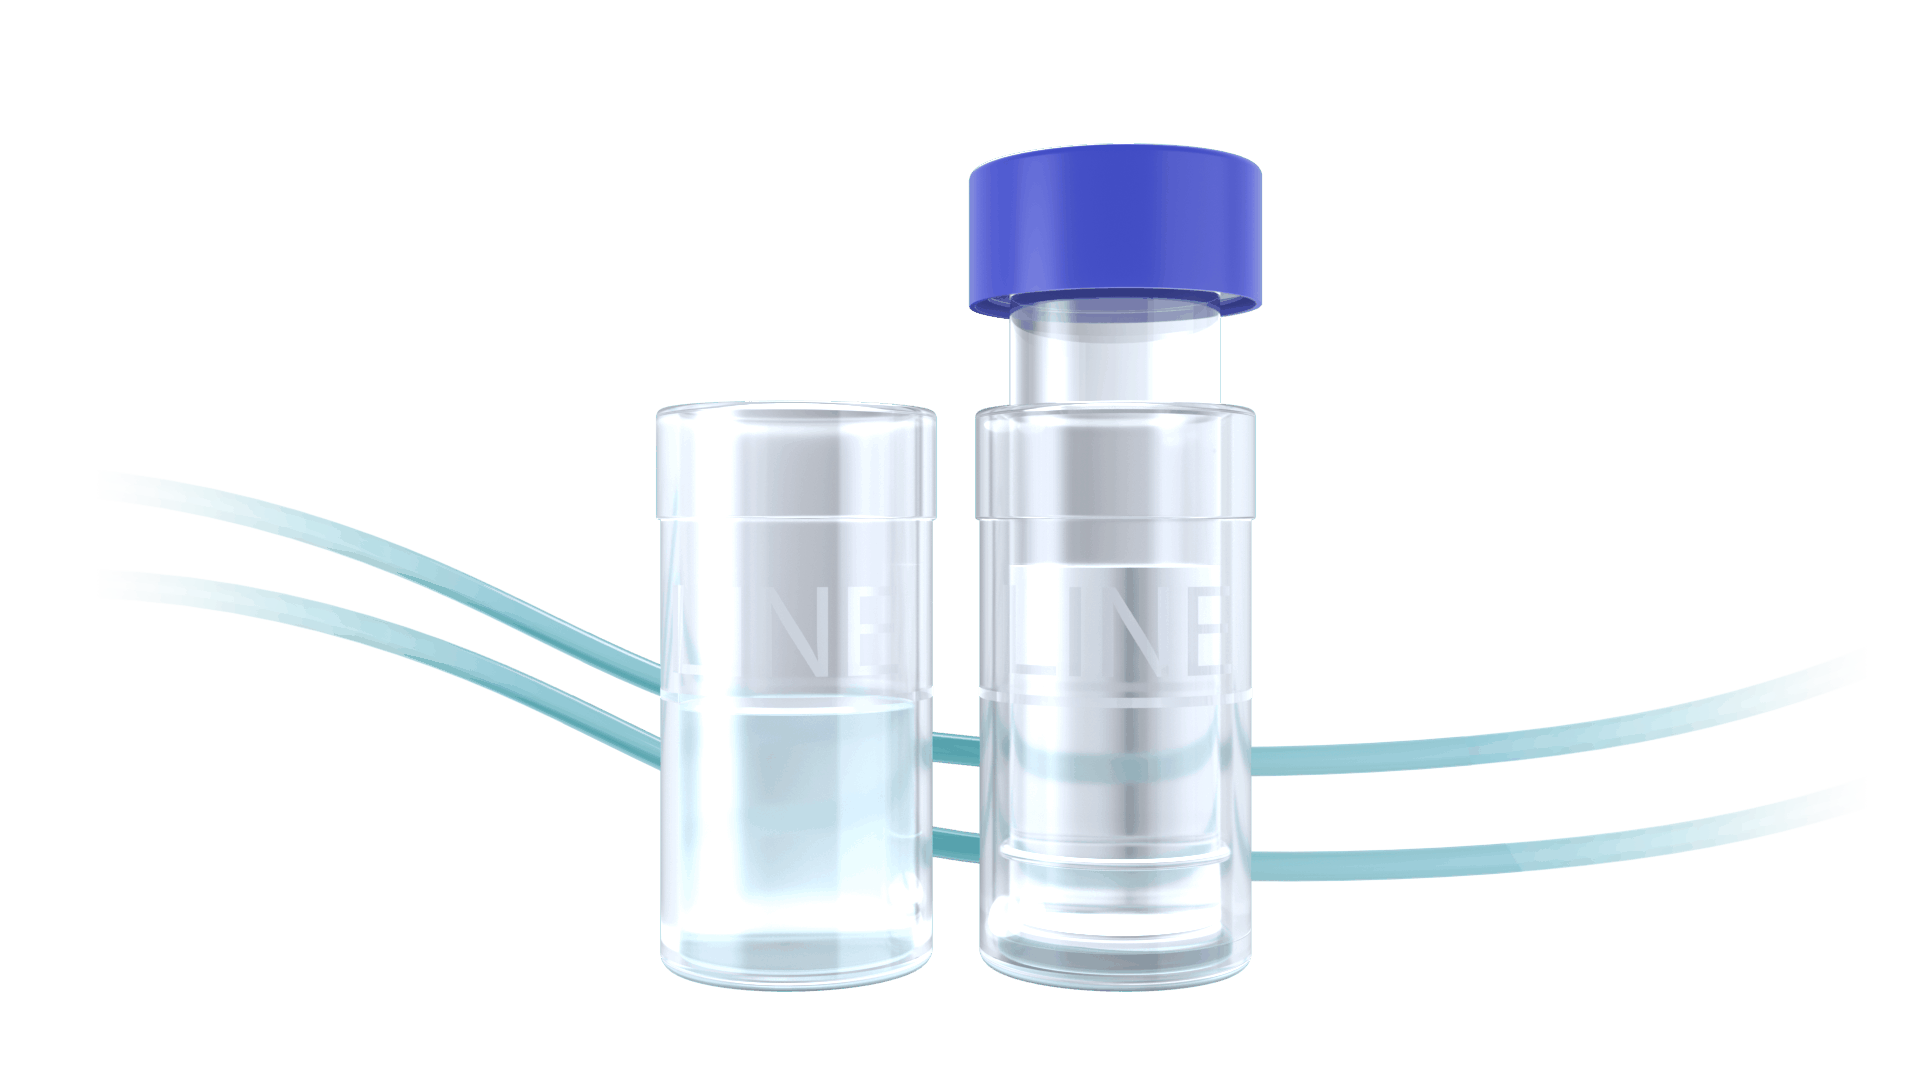 <h3>SEPARA - Syringeless filter vial | 캐시바이</h3>
